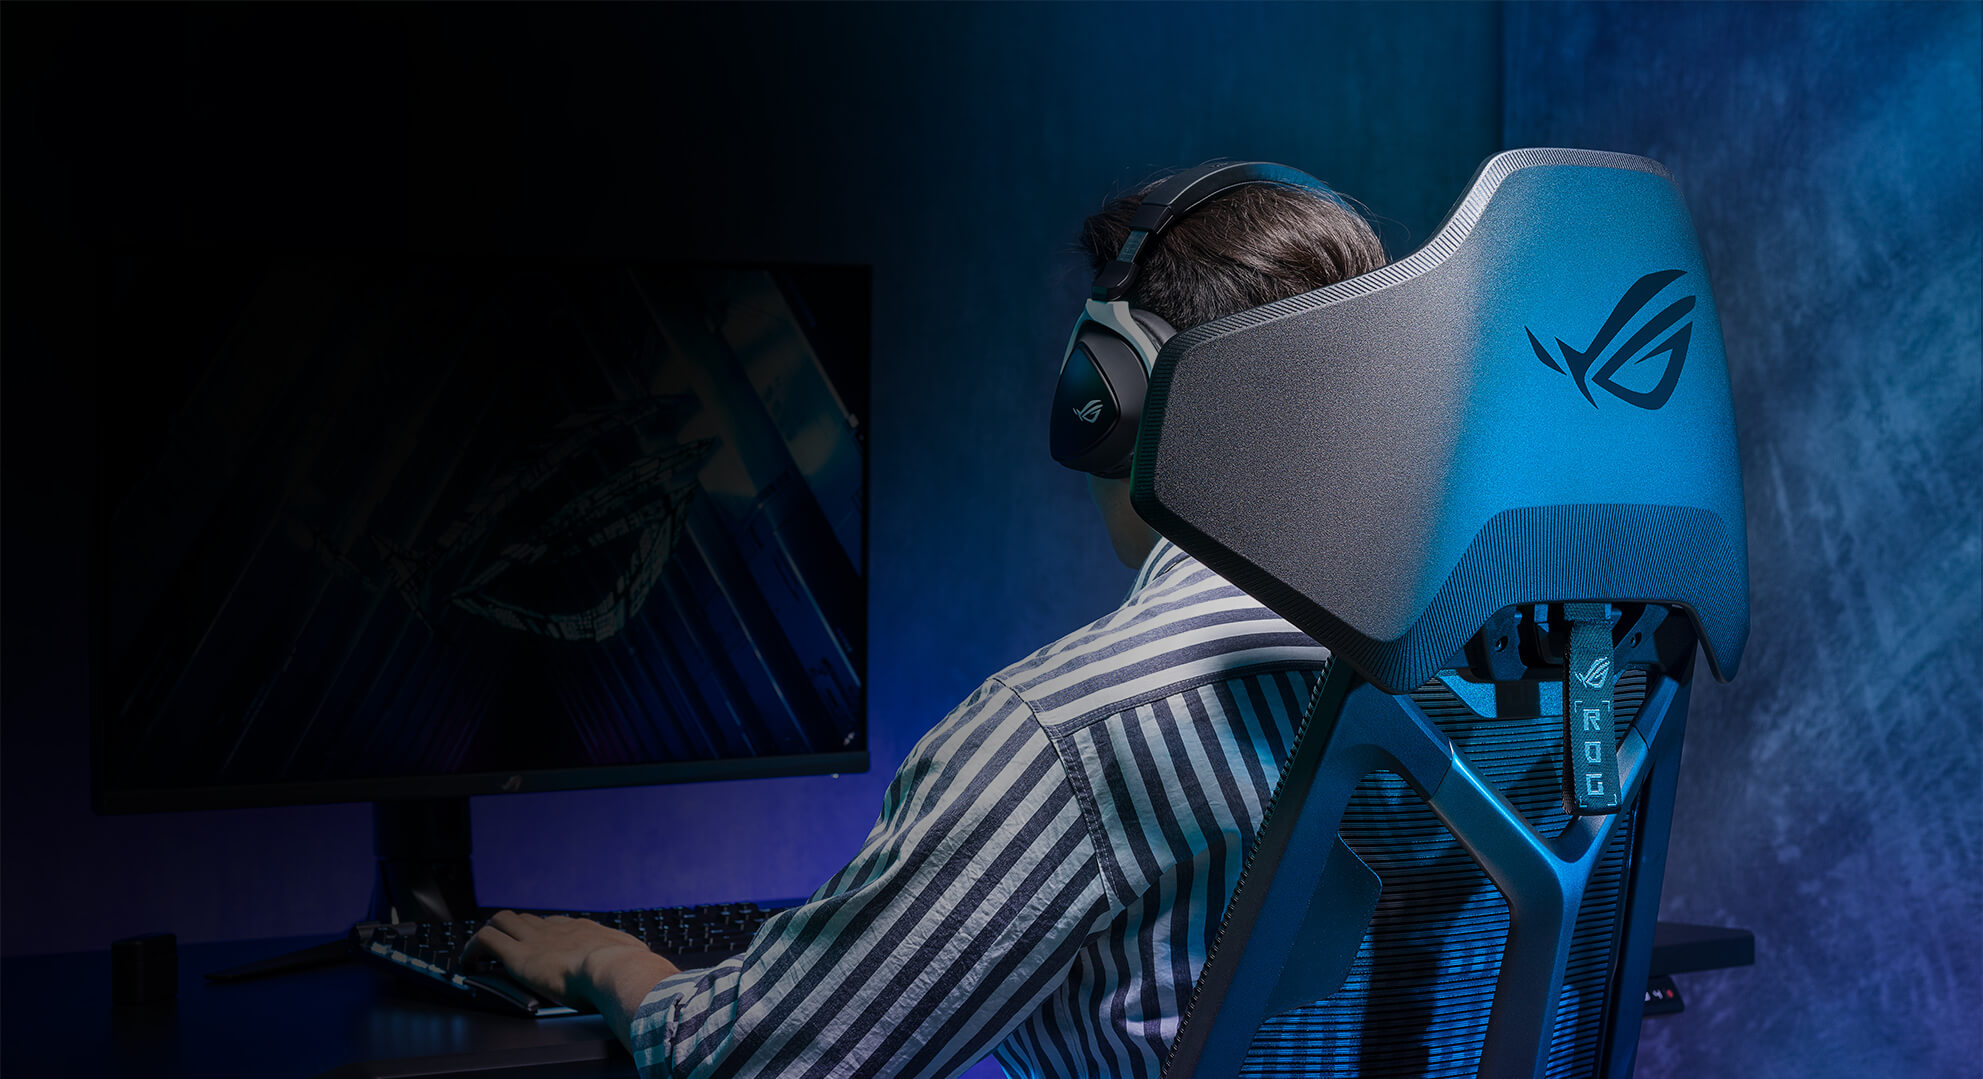 Pokazany w widoku pod kątem mężczyzna grający na komputerze desktopowym, siedzący na fotelu gamingowym ROG Destrier Ergo